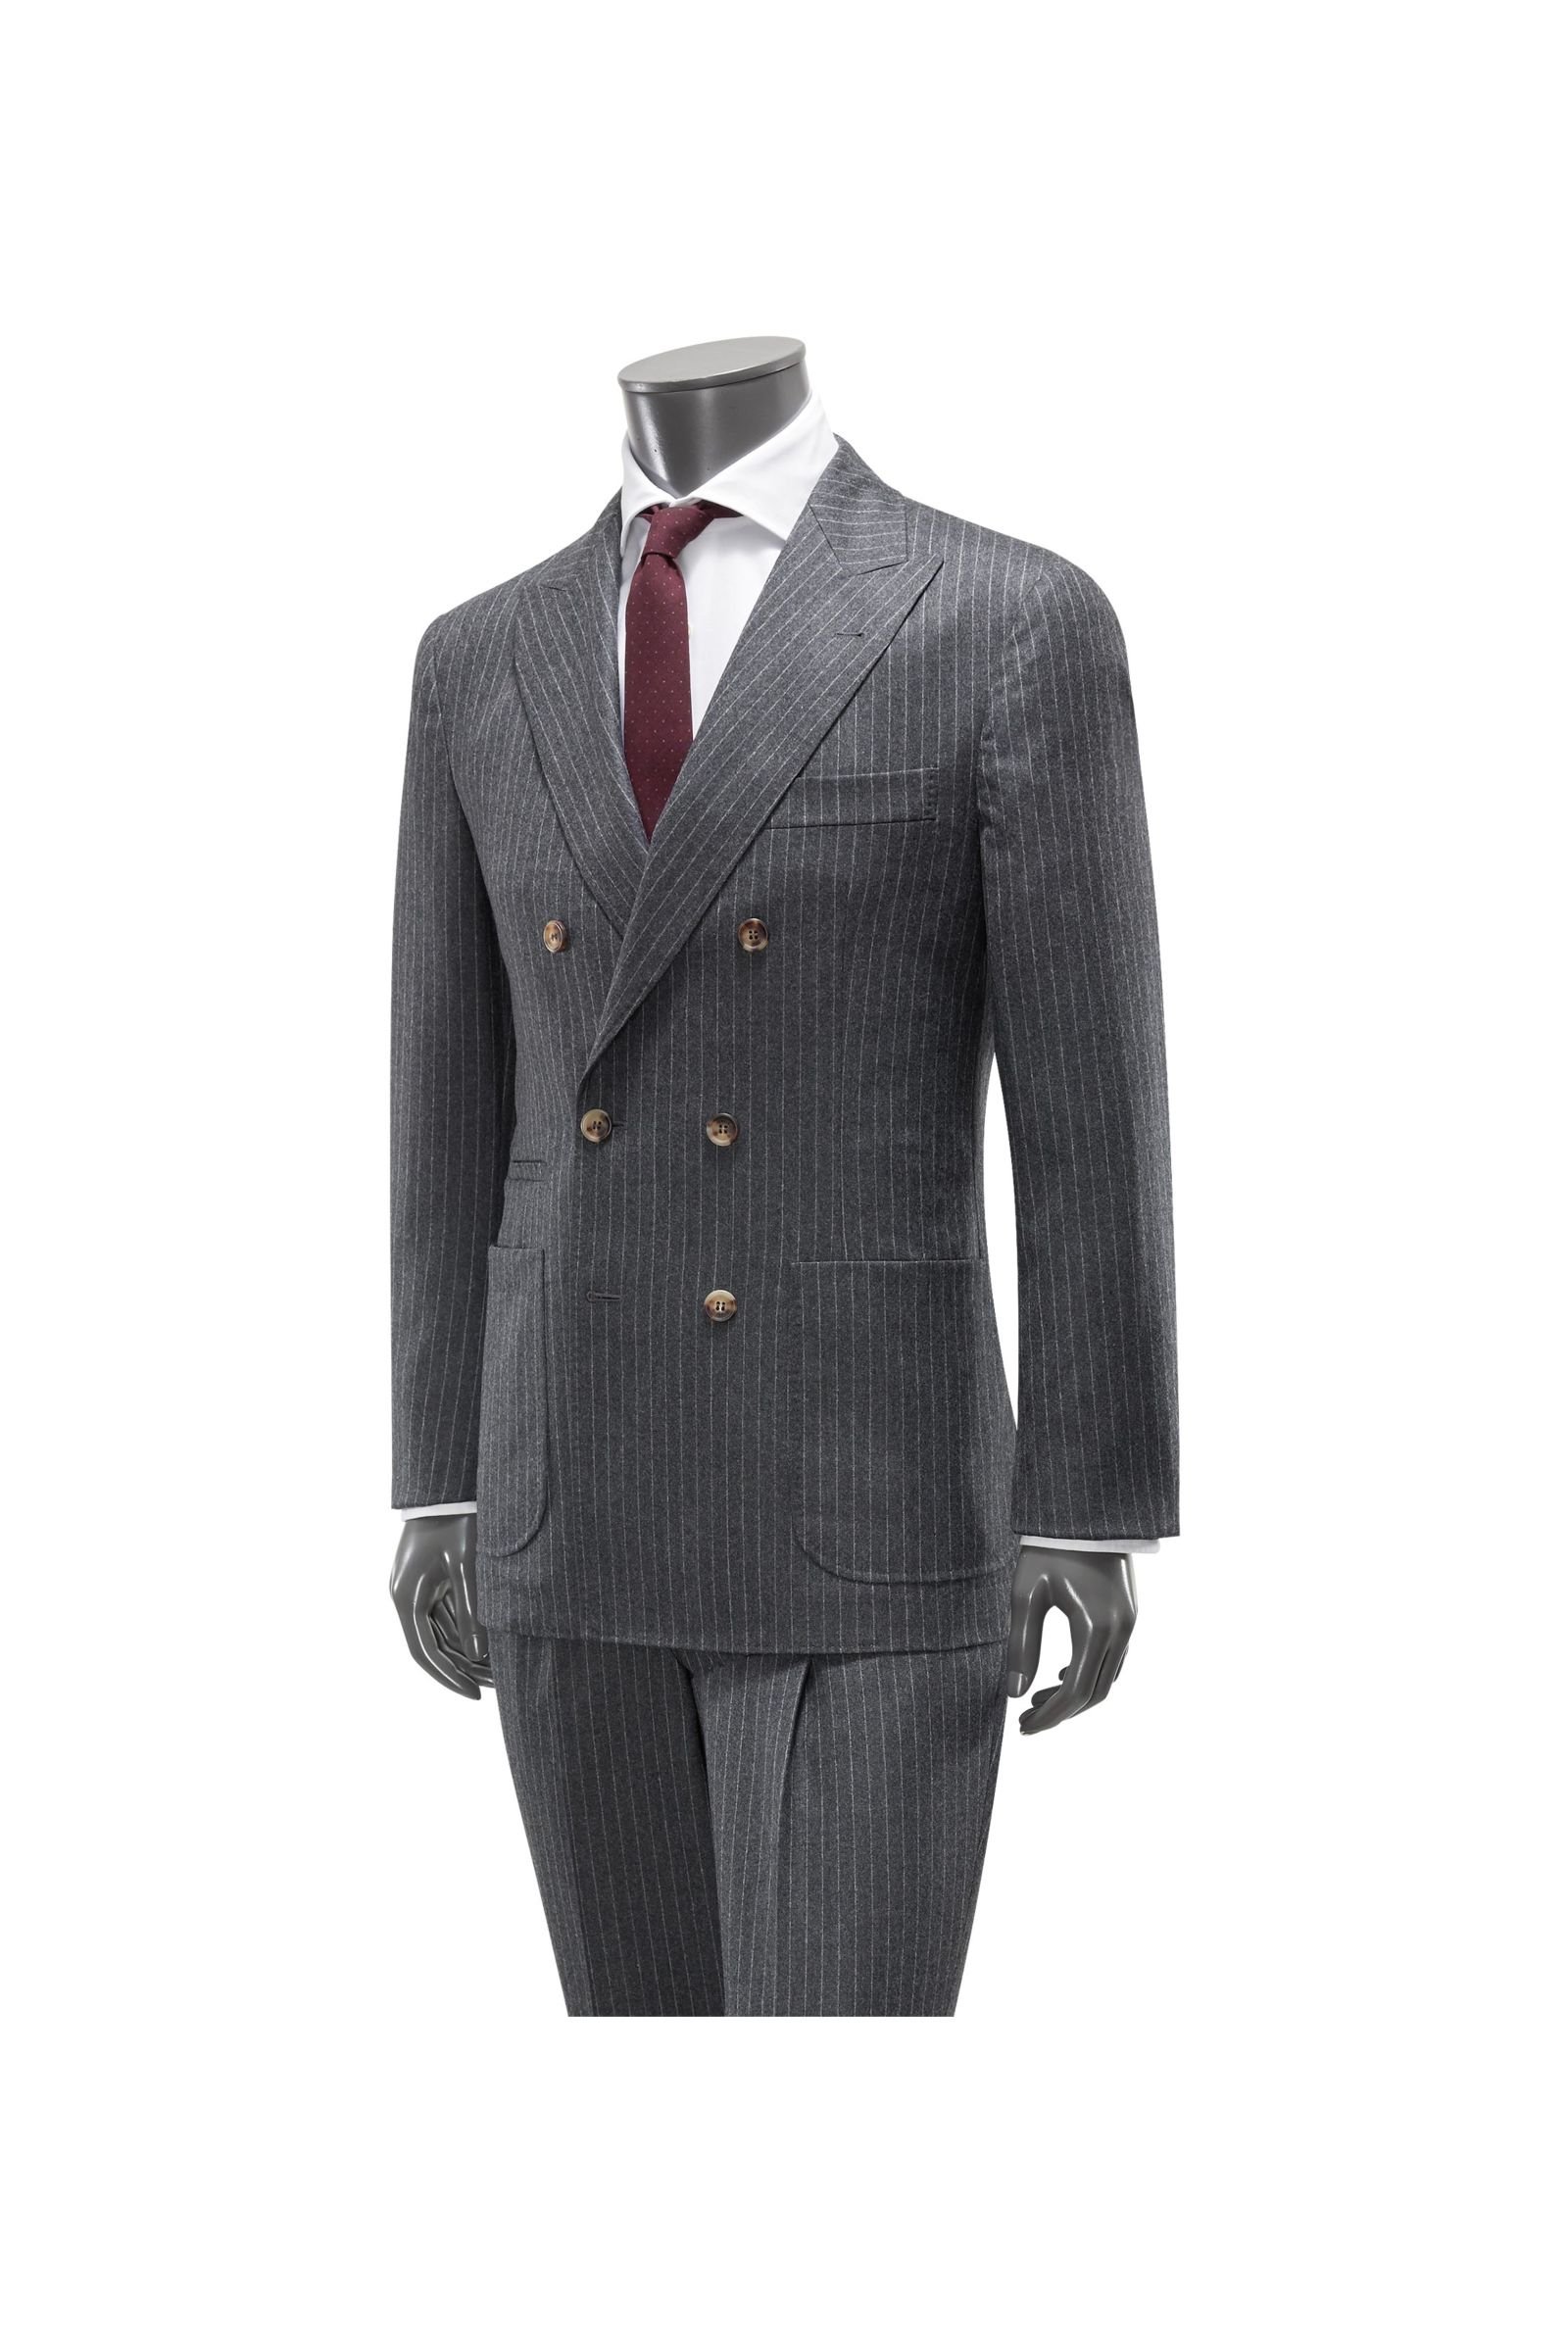 Suit dark grey striped